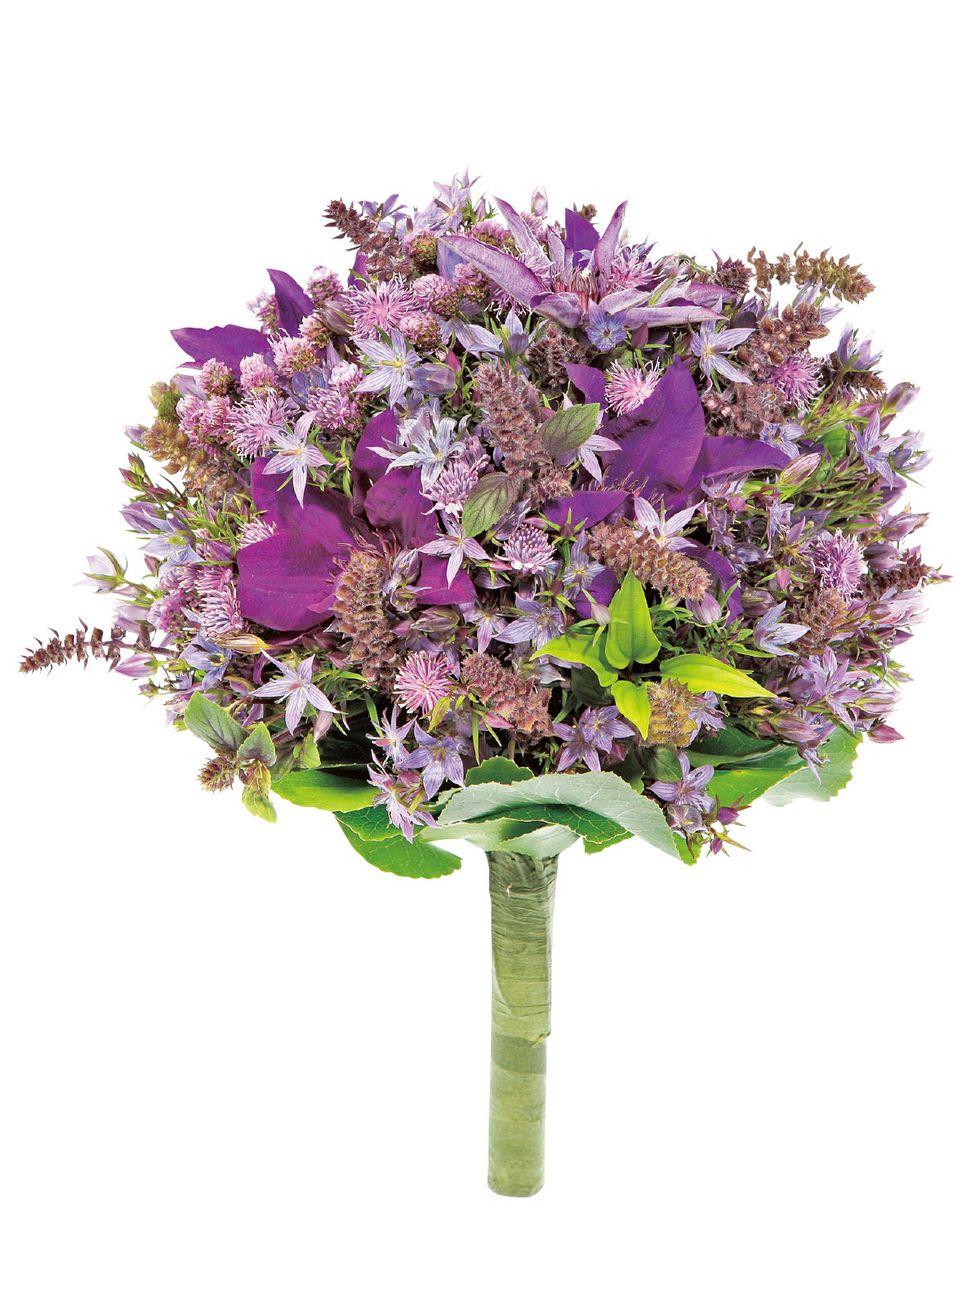 Purple, Flower, Petal, Violet, Lavender, Flowering plant, Botany, Cut flowers, Lilac, Artificial flower, 